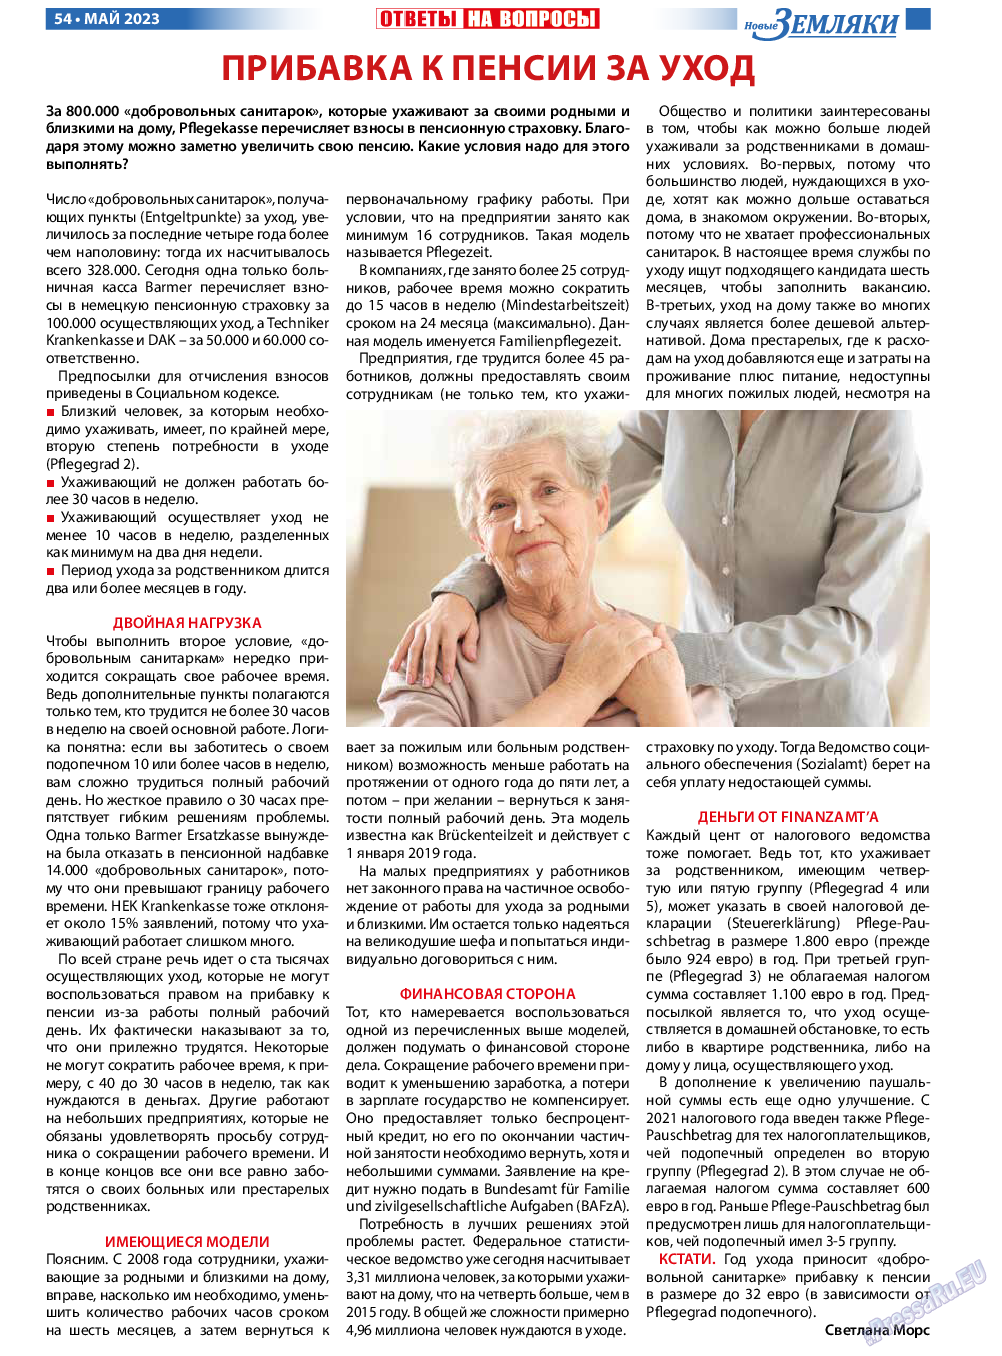 Новые Земляки, газета. 2023 №5 стр.54